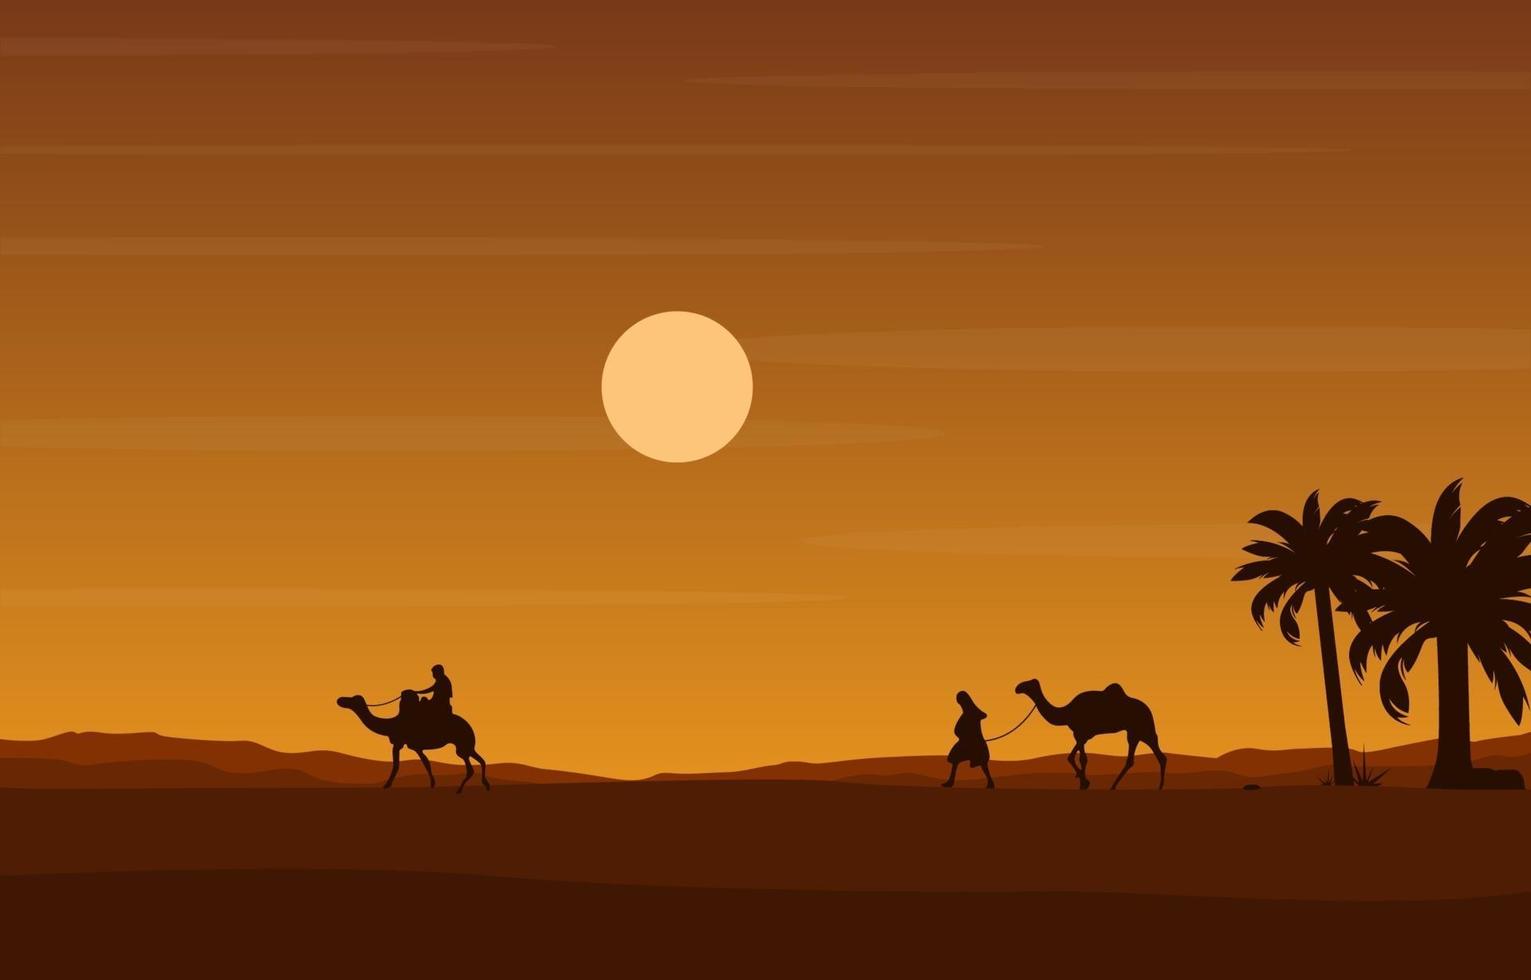 jinete de camello cruzando la vasta colina del desierto paisaje árabe ilustración vector